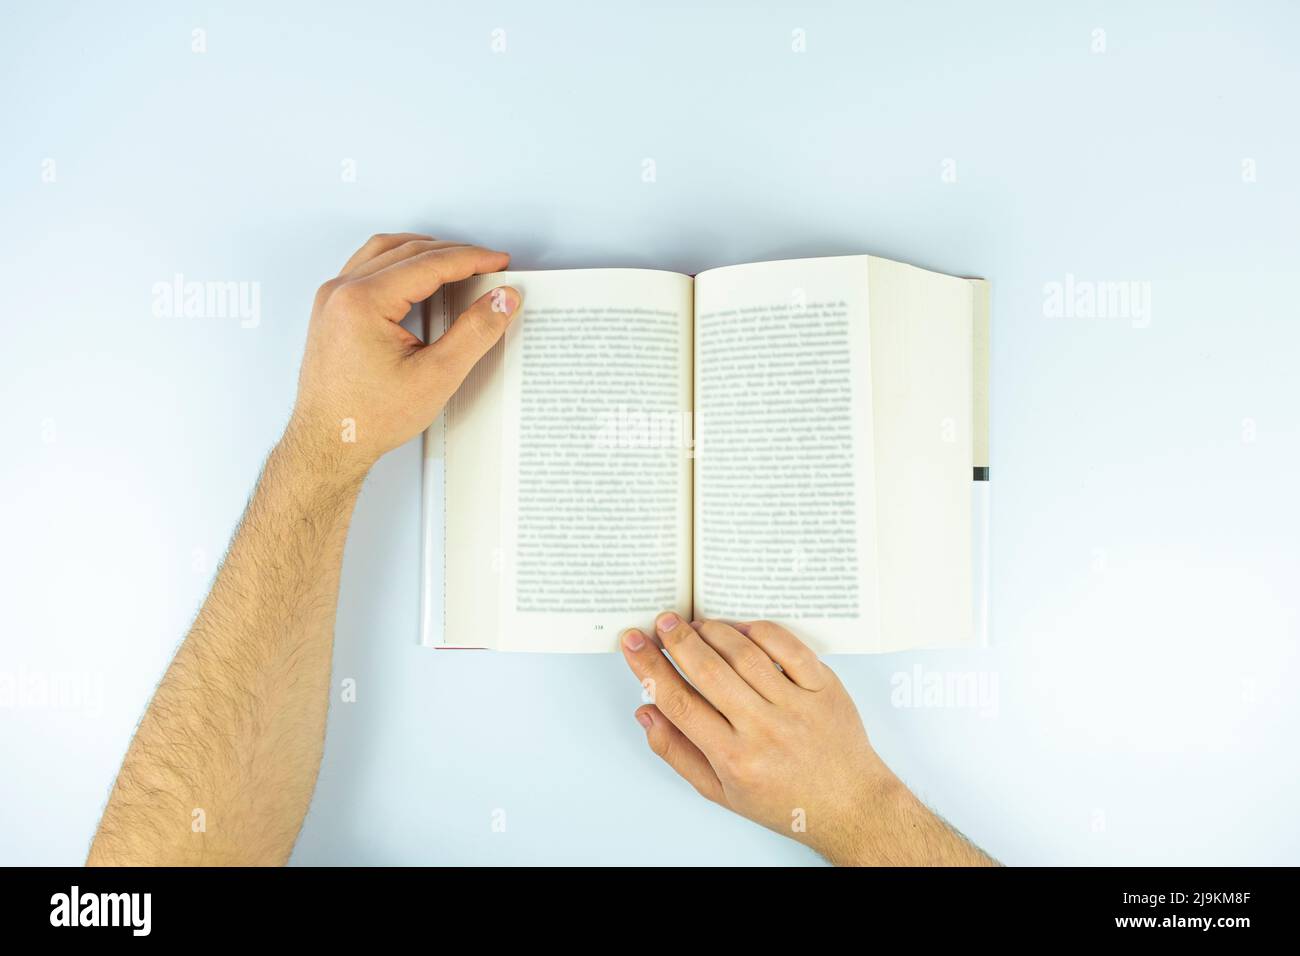 Mann Hände mit offenen Buchseite isoliert auf weißem Hintergrund, Buch-Konzept lesen, Studium und Lernidee, Draufsicht des Buches Stockfoto